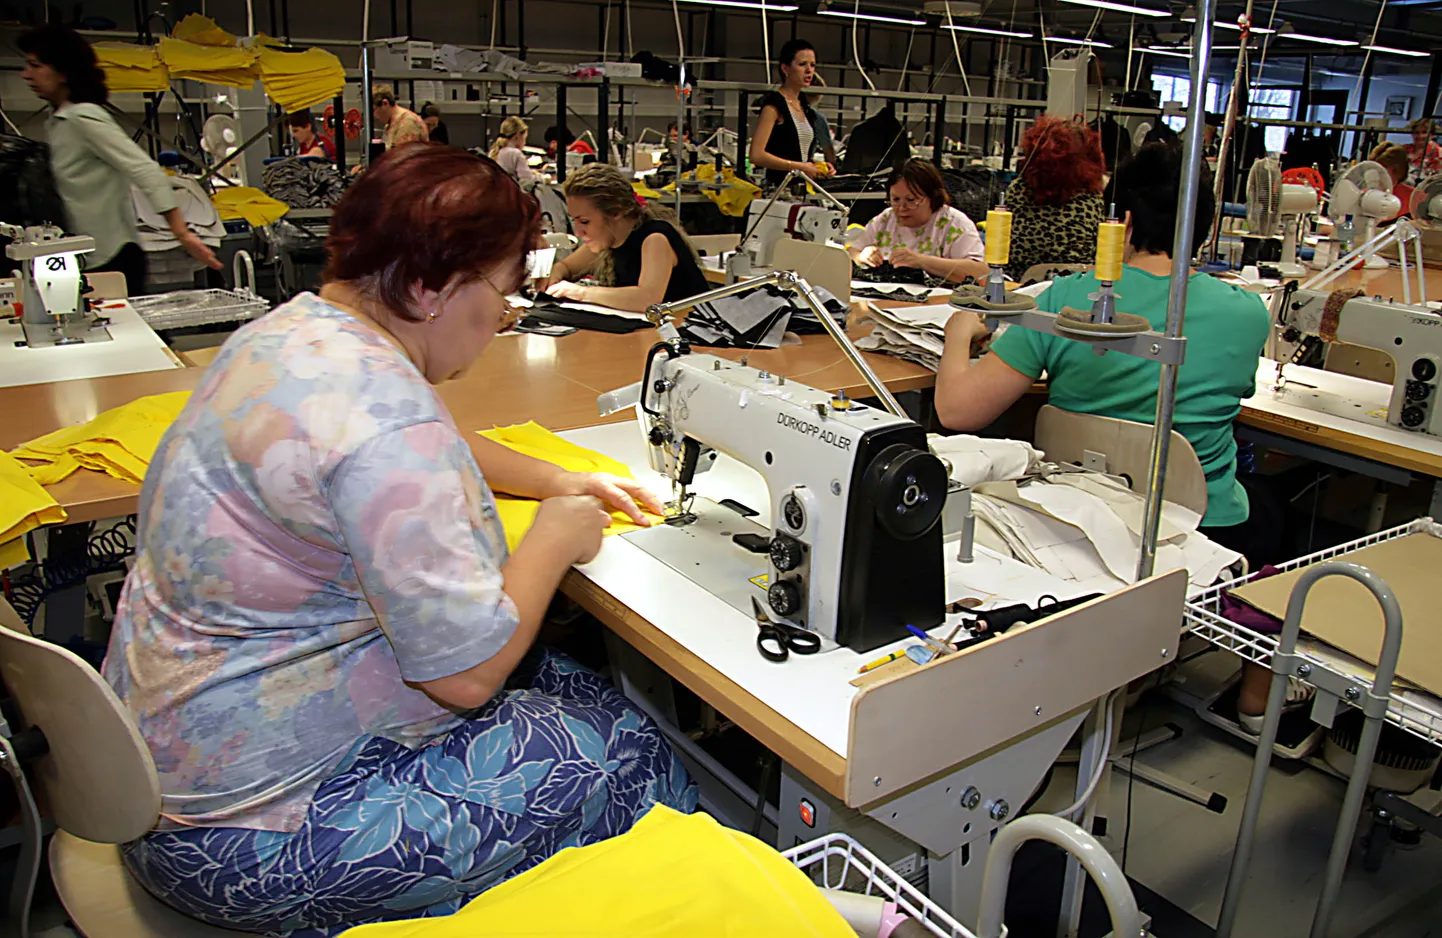 Производственное подразделение "Baltika" многие годы находилось в центре Ахтме, являясь одним из крупнейших работодателей этого района. Данная фотография сделана в тамошнем швейном цехе в 2010 году.